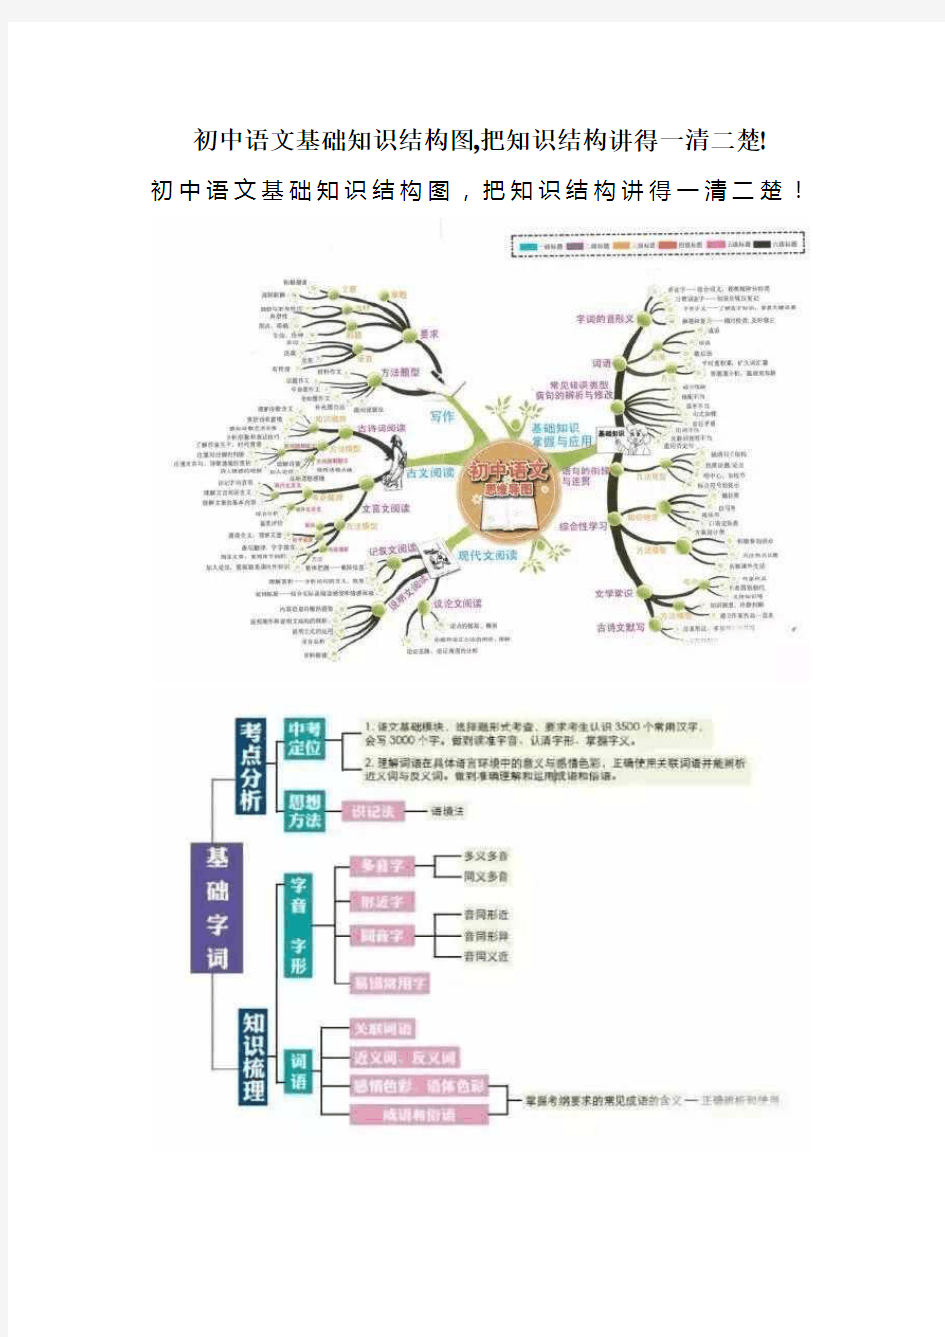 初中语文基础知识结构图,把知识结构讲得一清二楚!